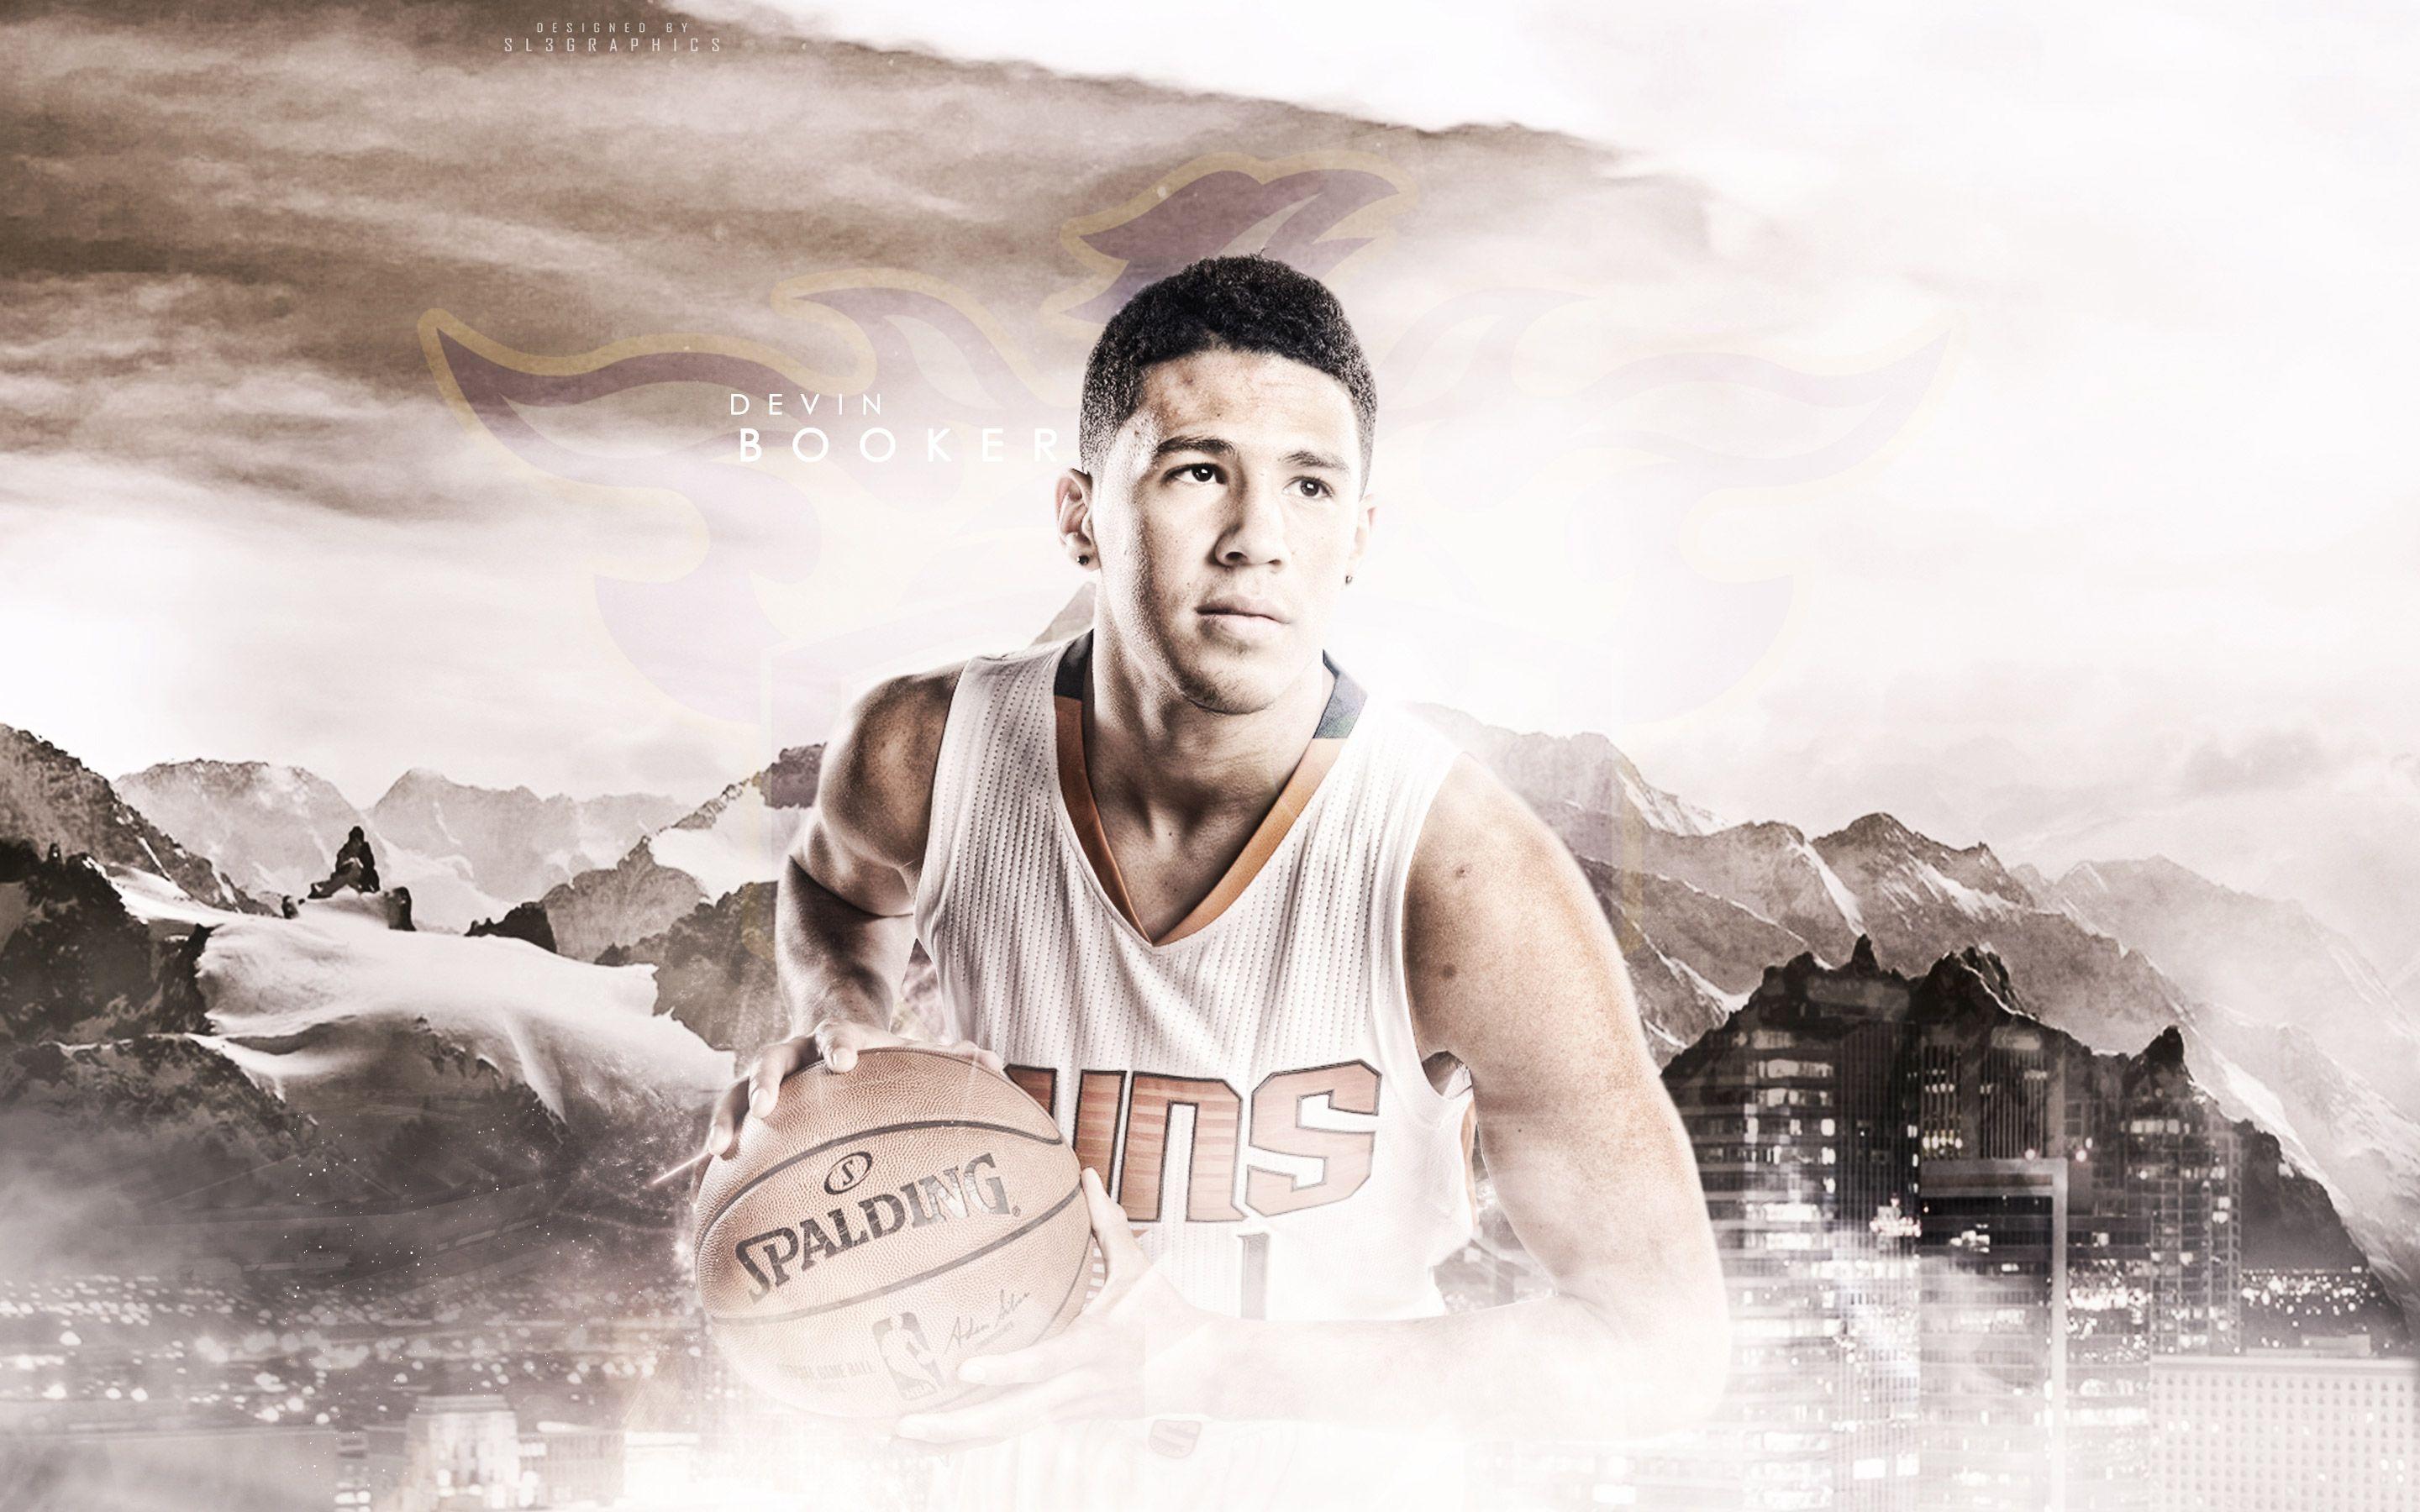 Phoenix Suns Wallpaper. Basketball Wallpaper at